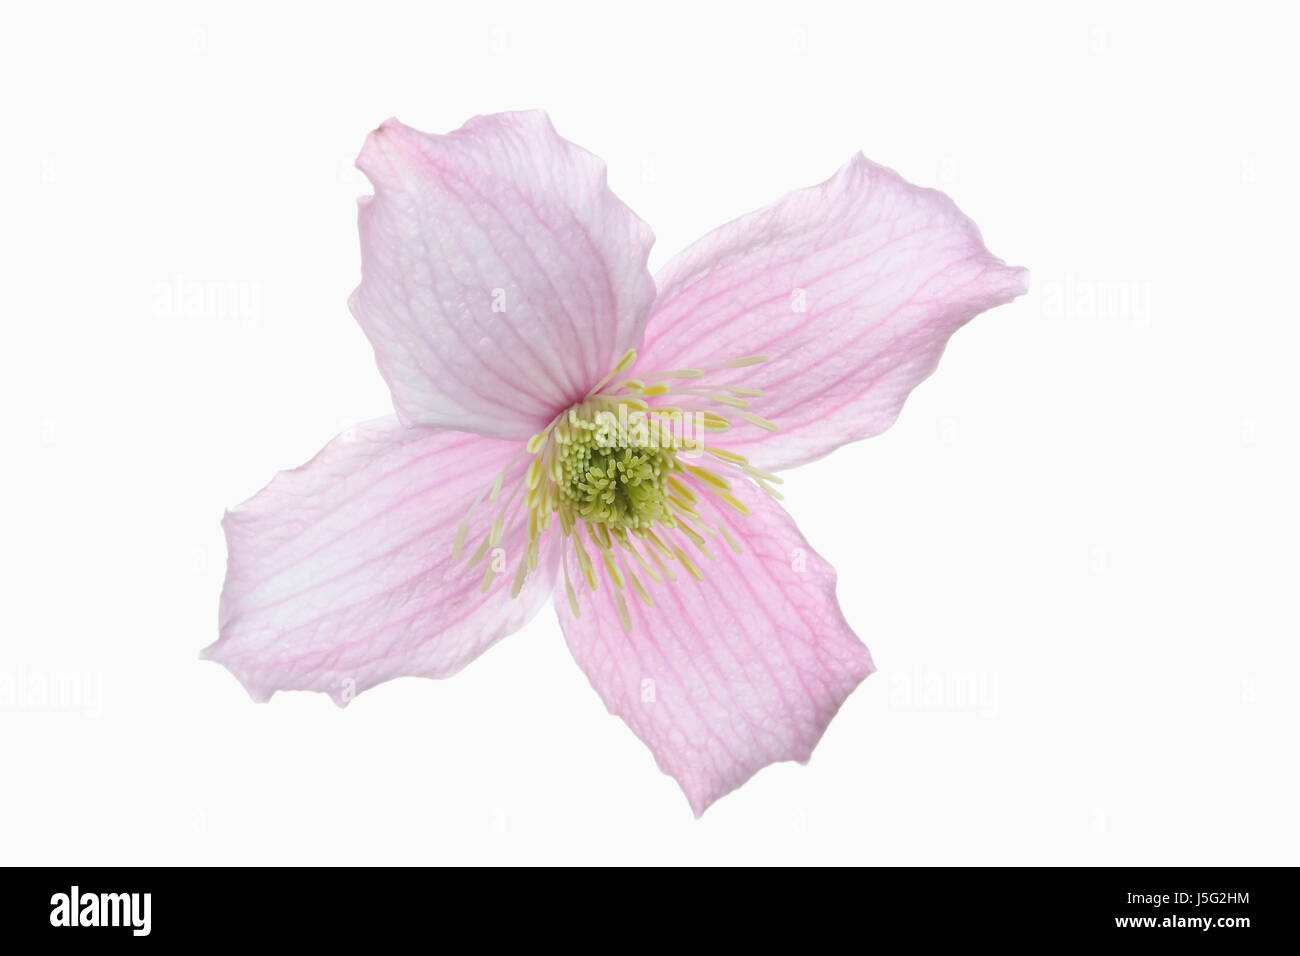 Clematis, Clematis Montana Wilsonii, Studio shot of single pink flower showing stamen. Stock Photo